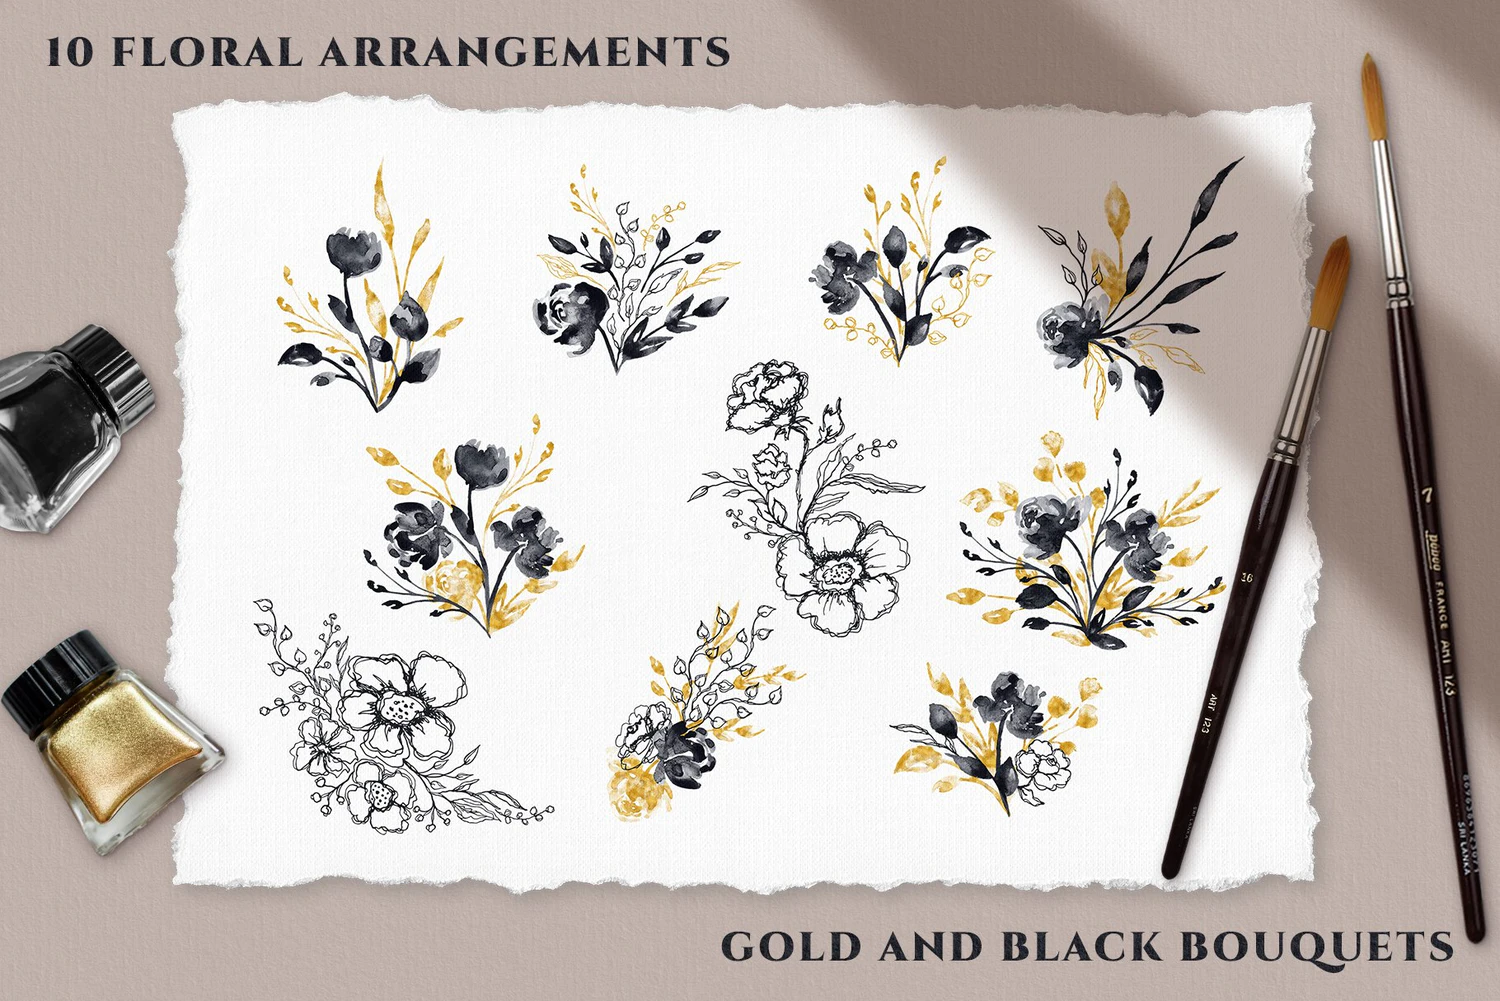 5568 典雅的黑色&黄金水彩花卉插画素材